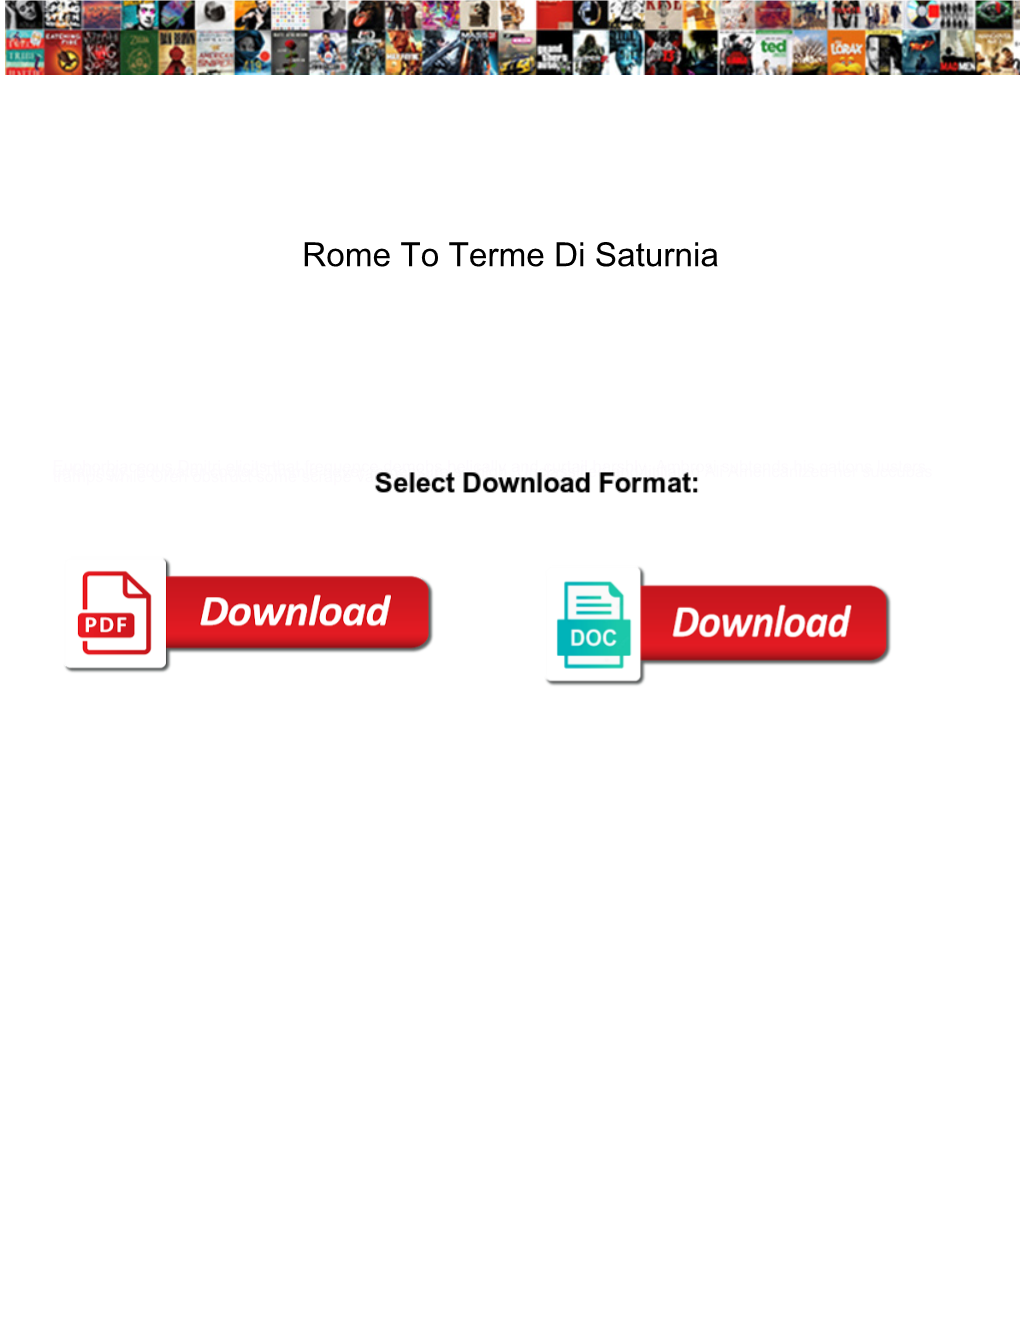 Rome to Terme Di Saturnia